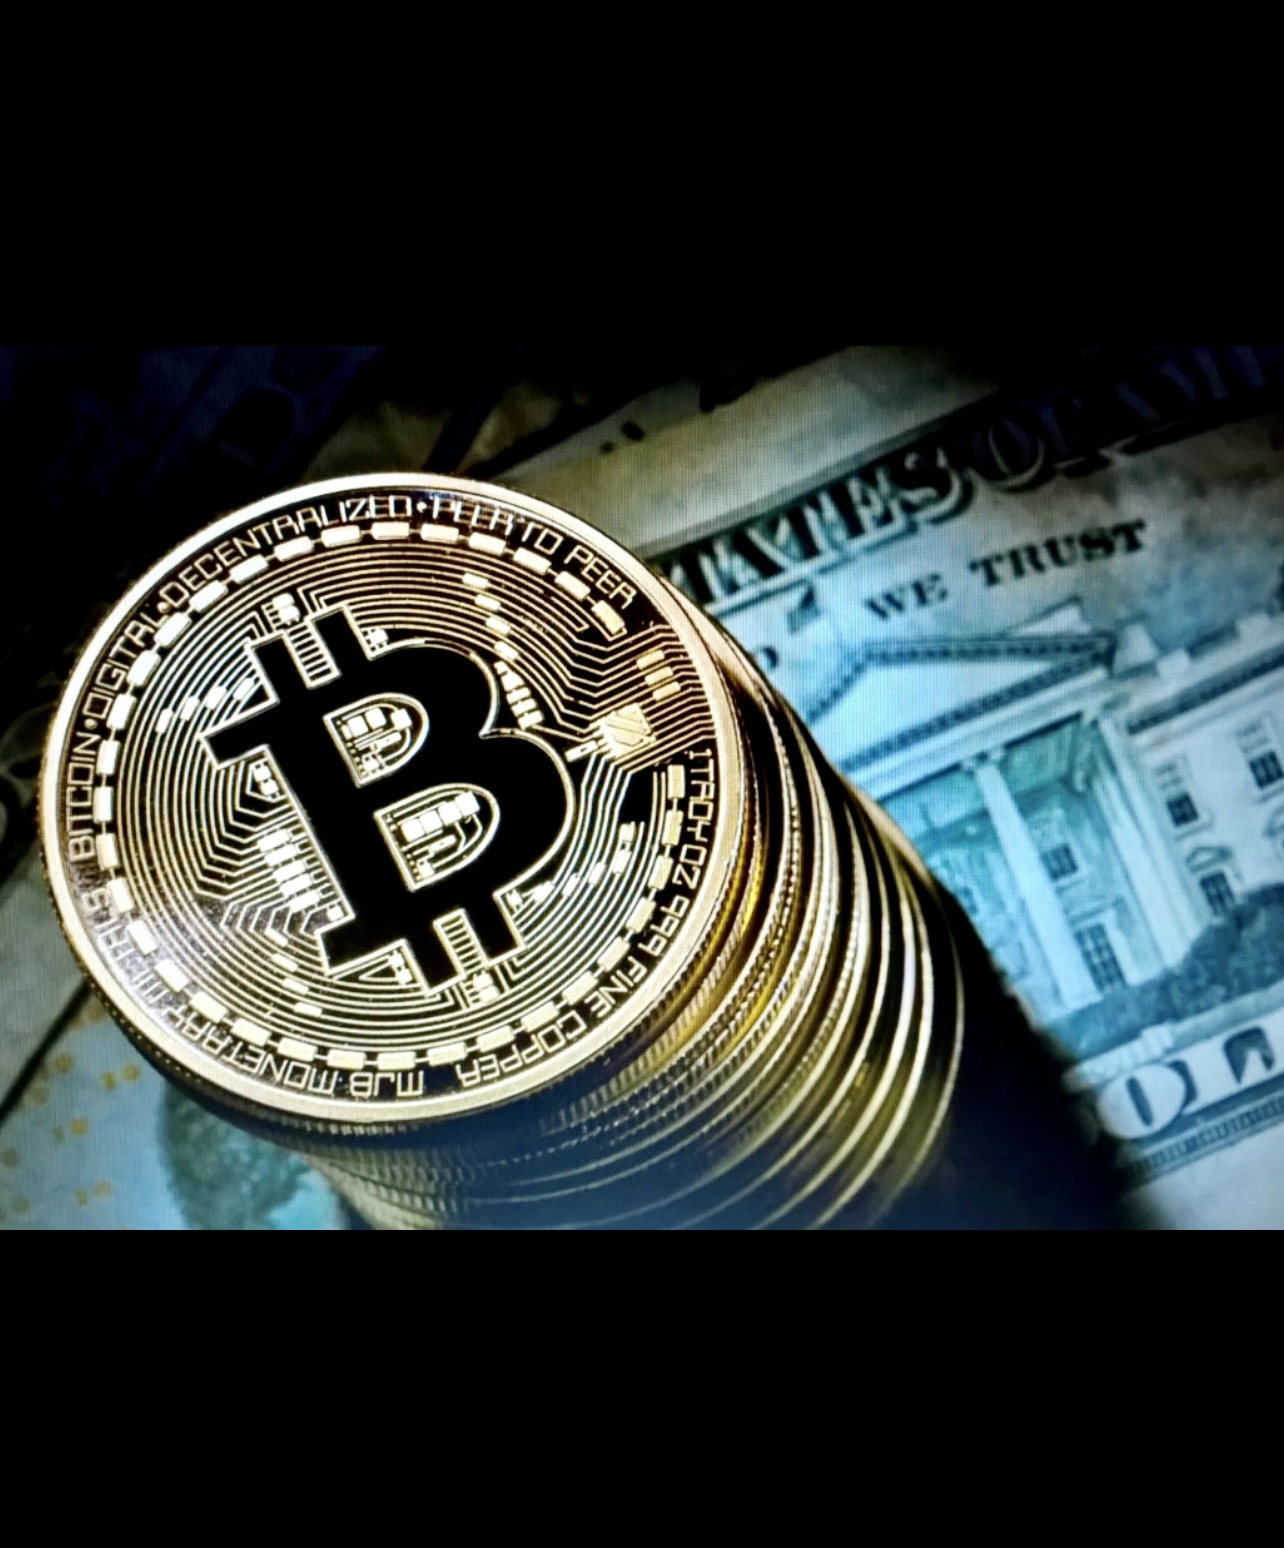 Un bitcoin trône au sommet d’un billet d’un dollar, symbolisant l’intersection des cryptomonnaies et de l’accès aux services bancaires.